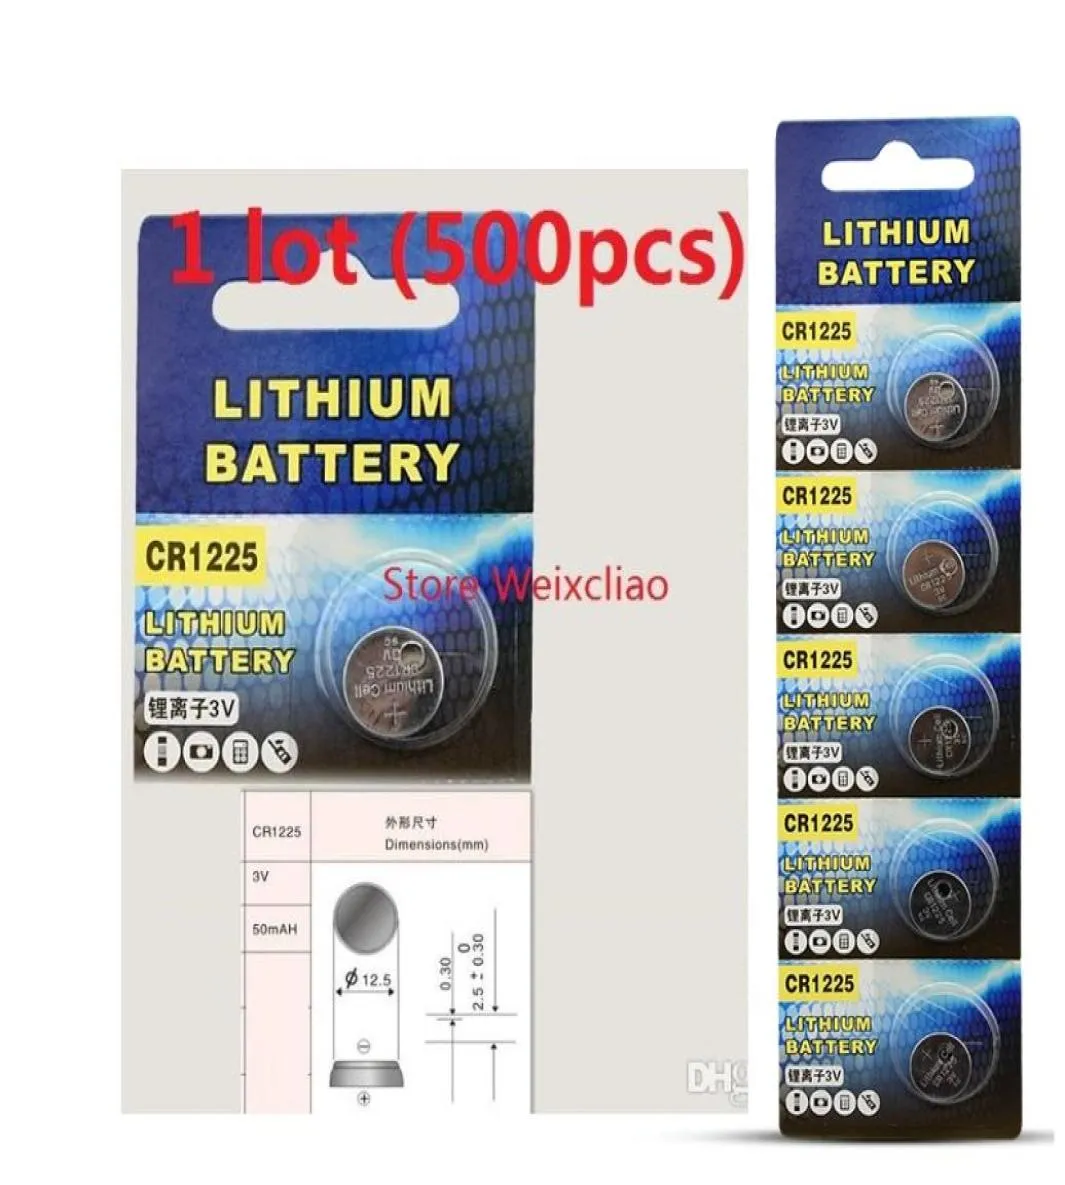 500pcs 1 lot Batteries CR1225 3V Lithium li ion bouton Cellule Batterie CR 1225 3 Volt Liion Coin4724670